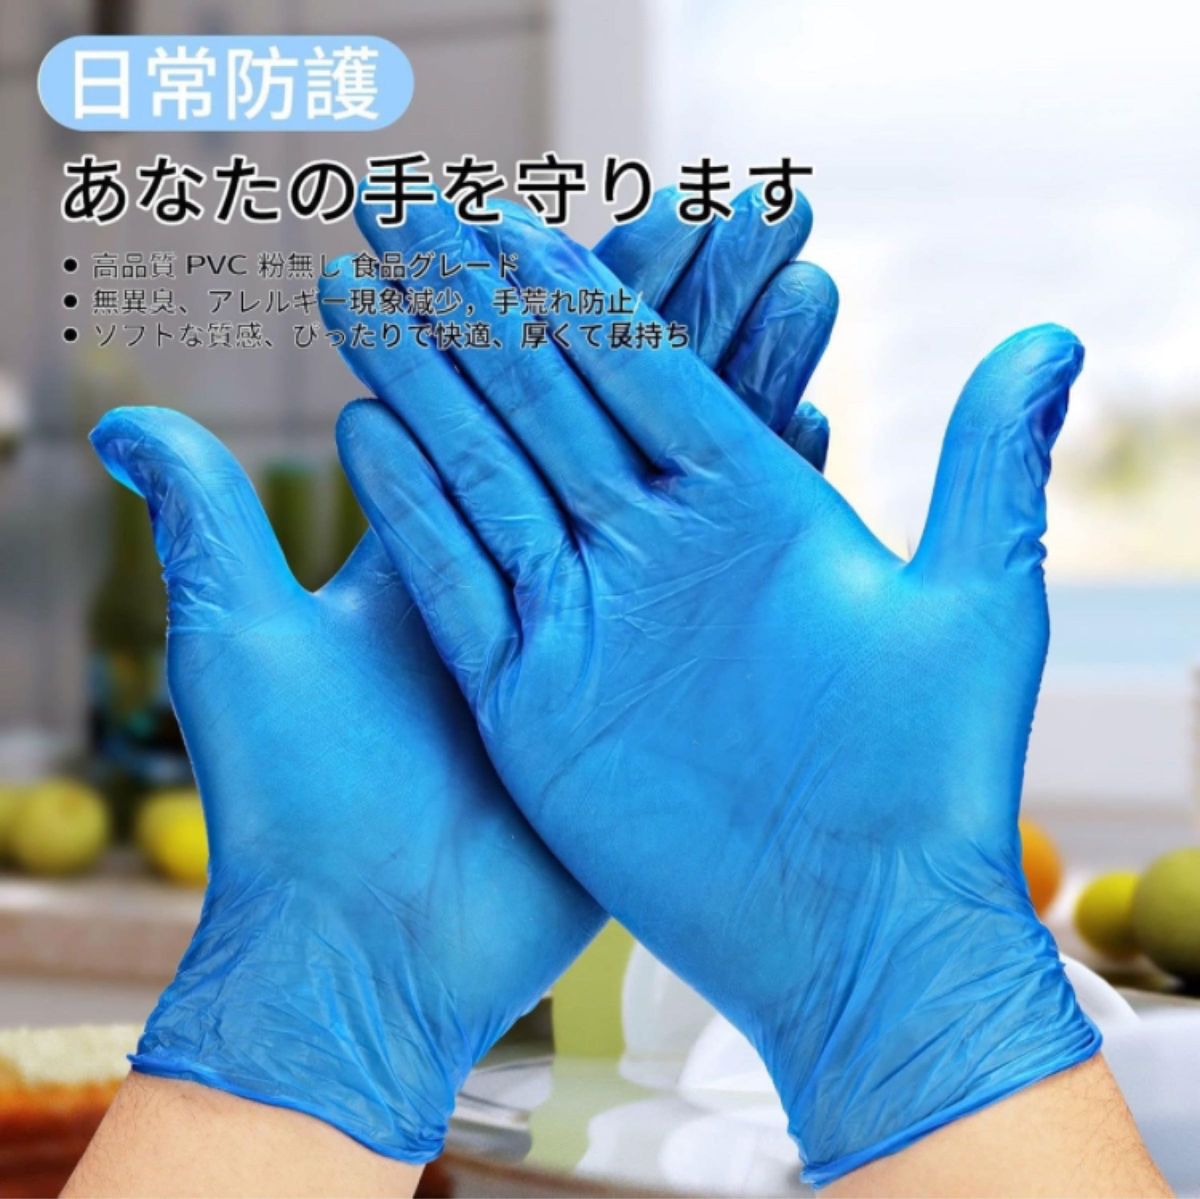 ビニール手袋  青色  粉なし  クッキング 清潔  園芸など